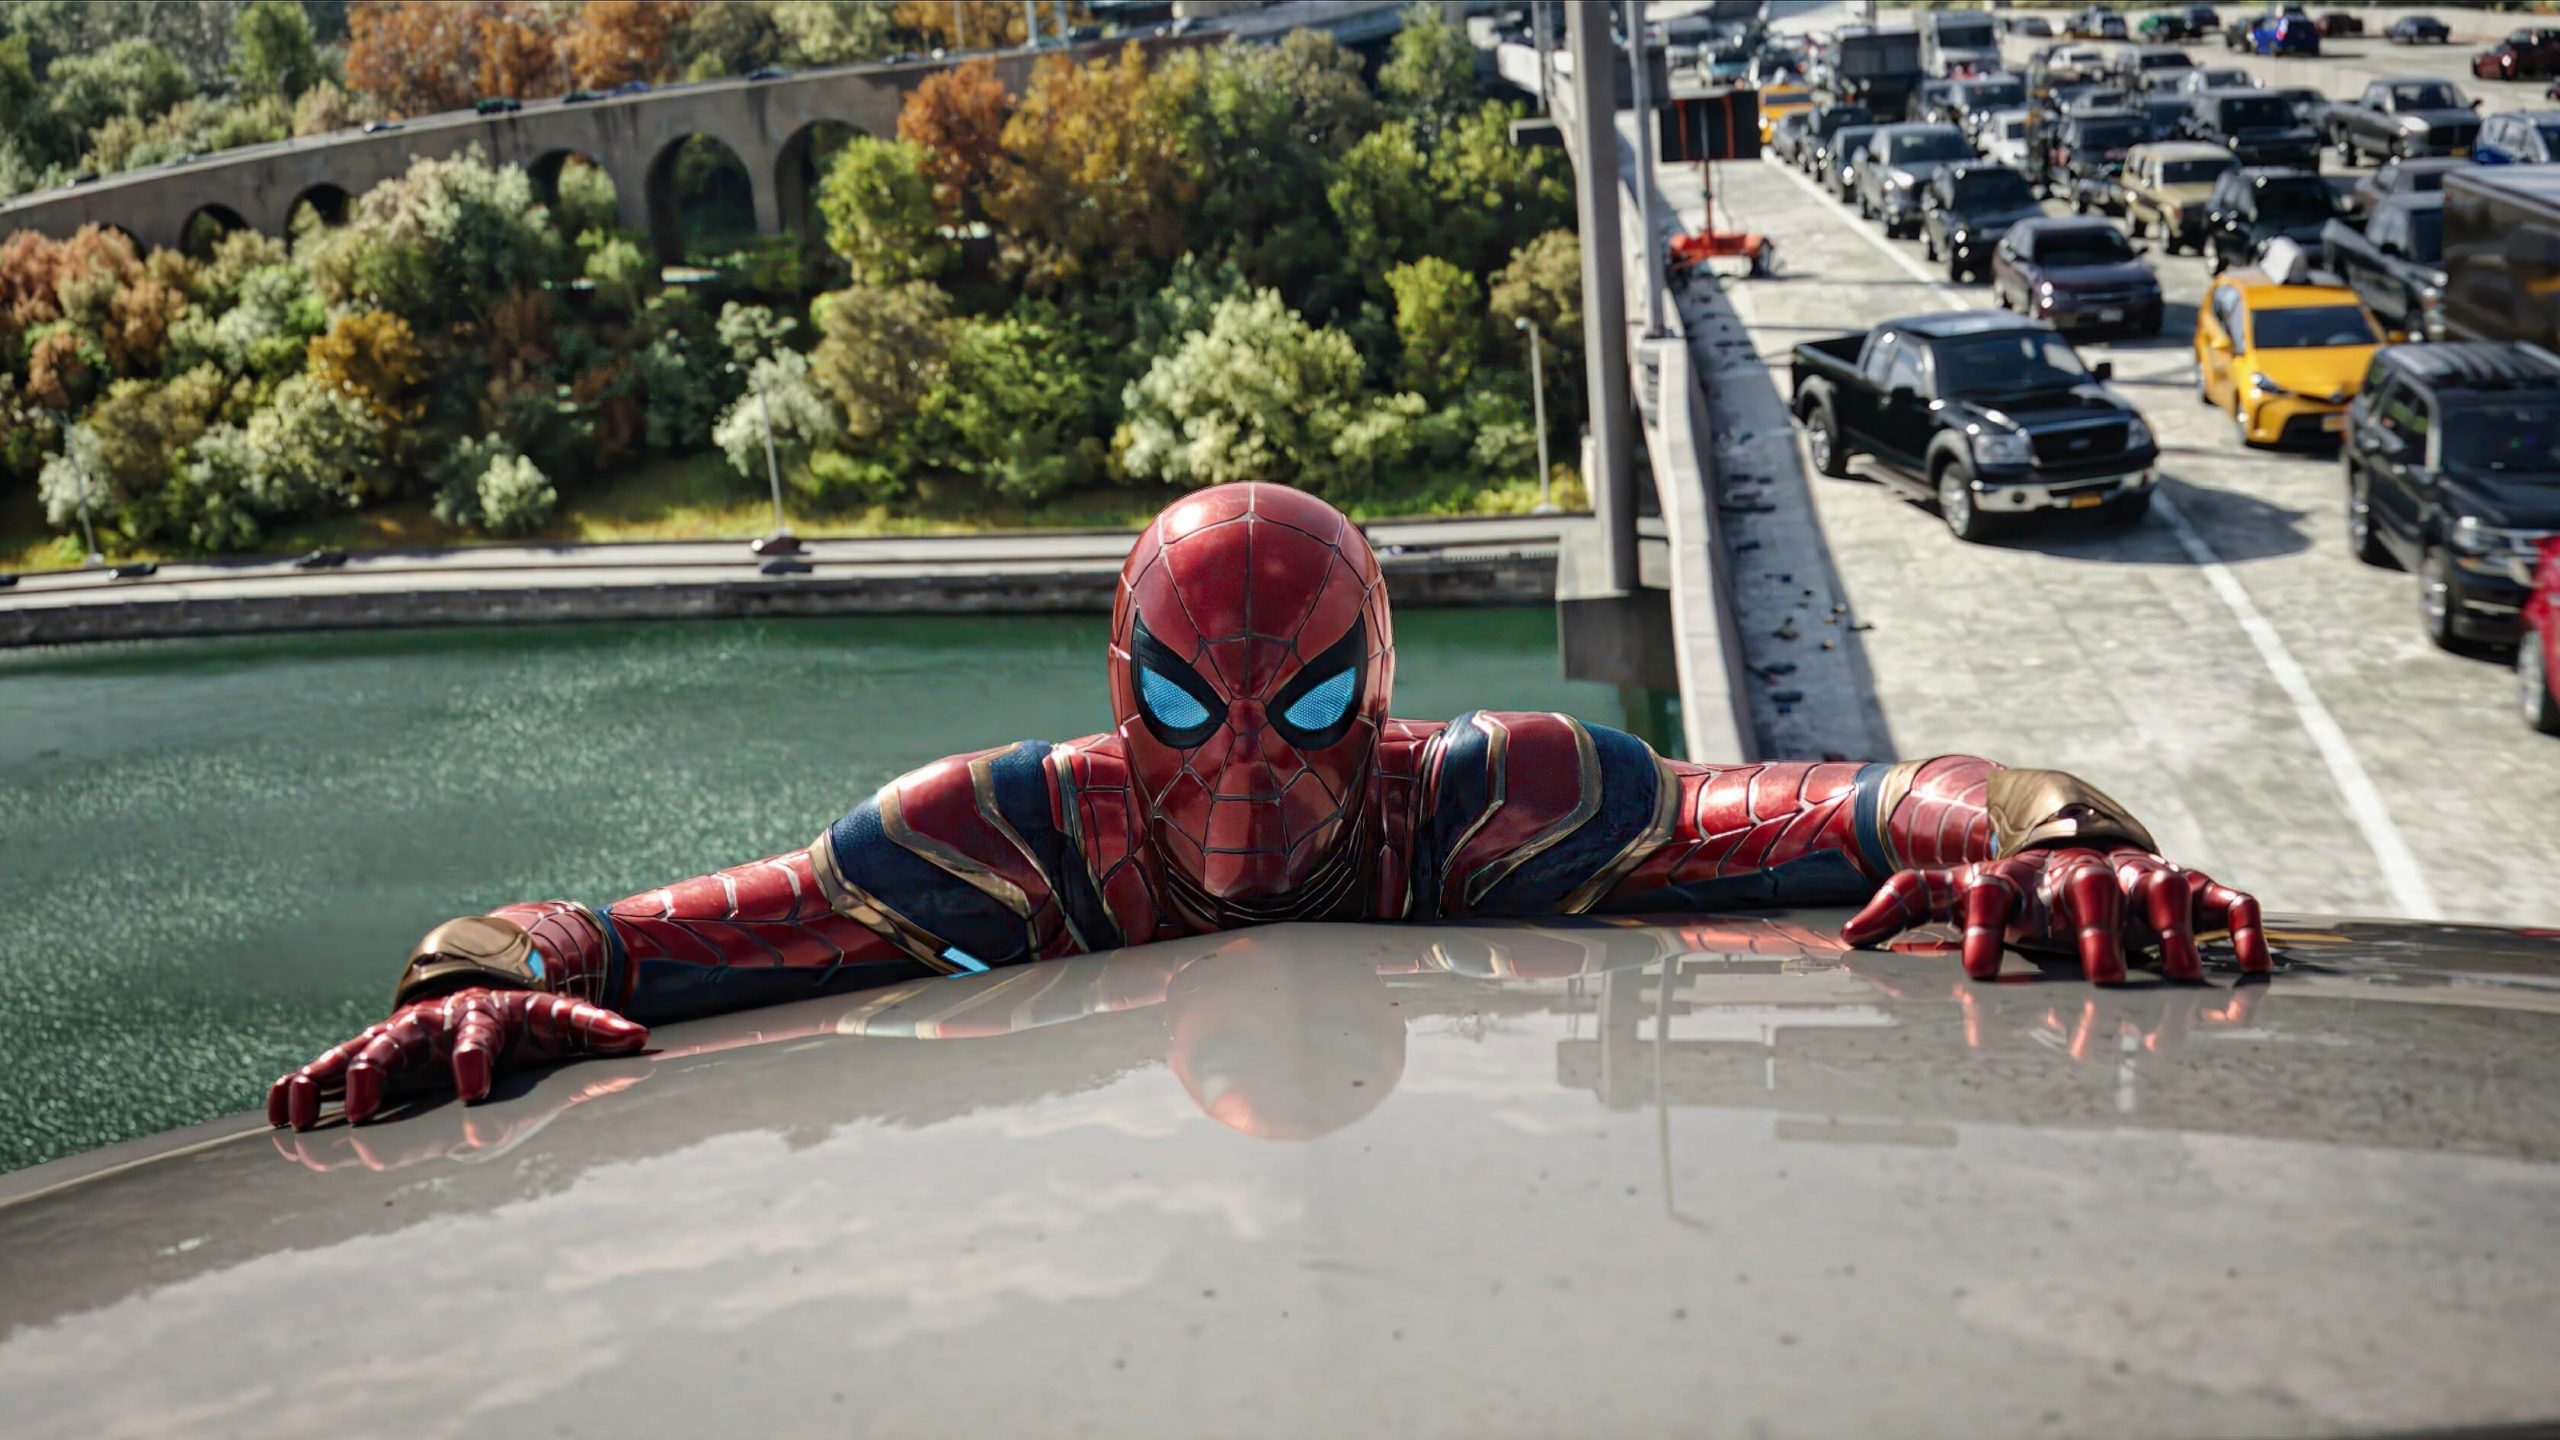 Spider-Man: No Way Home backdrop